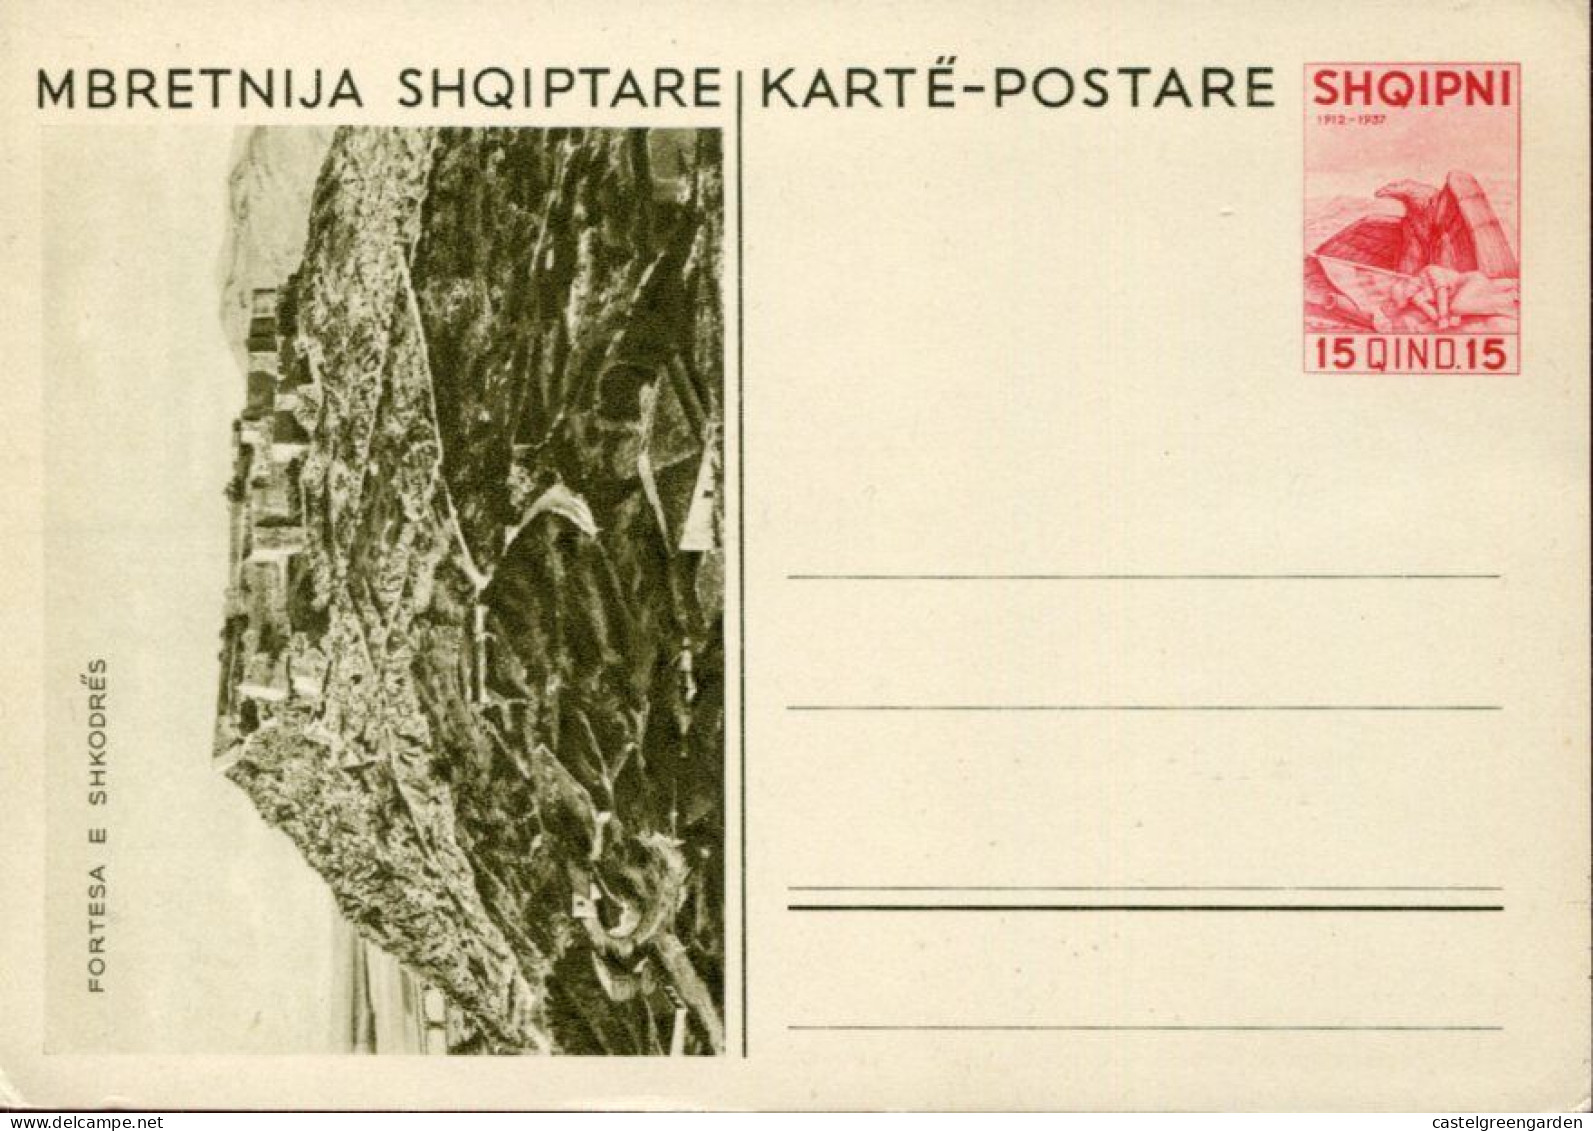 X0470 Albania,stationery Card 15q.Karte Postare Mbretnija Shqiptare,showing Fortesa E Shkodres - Albania